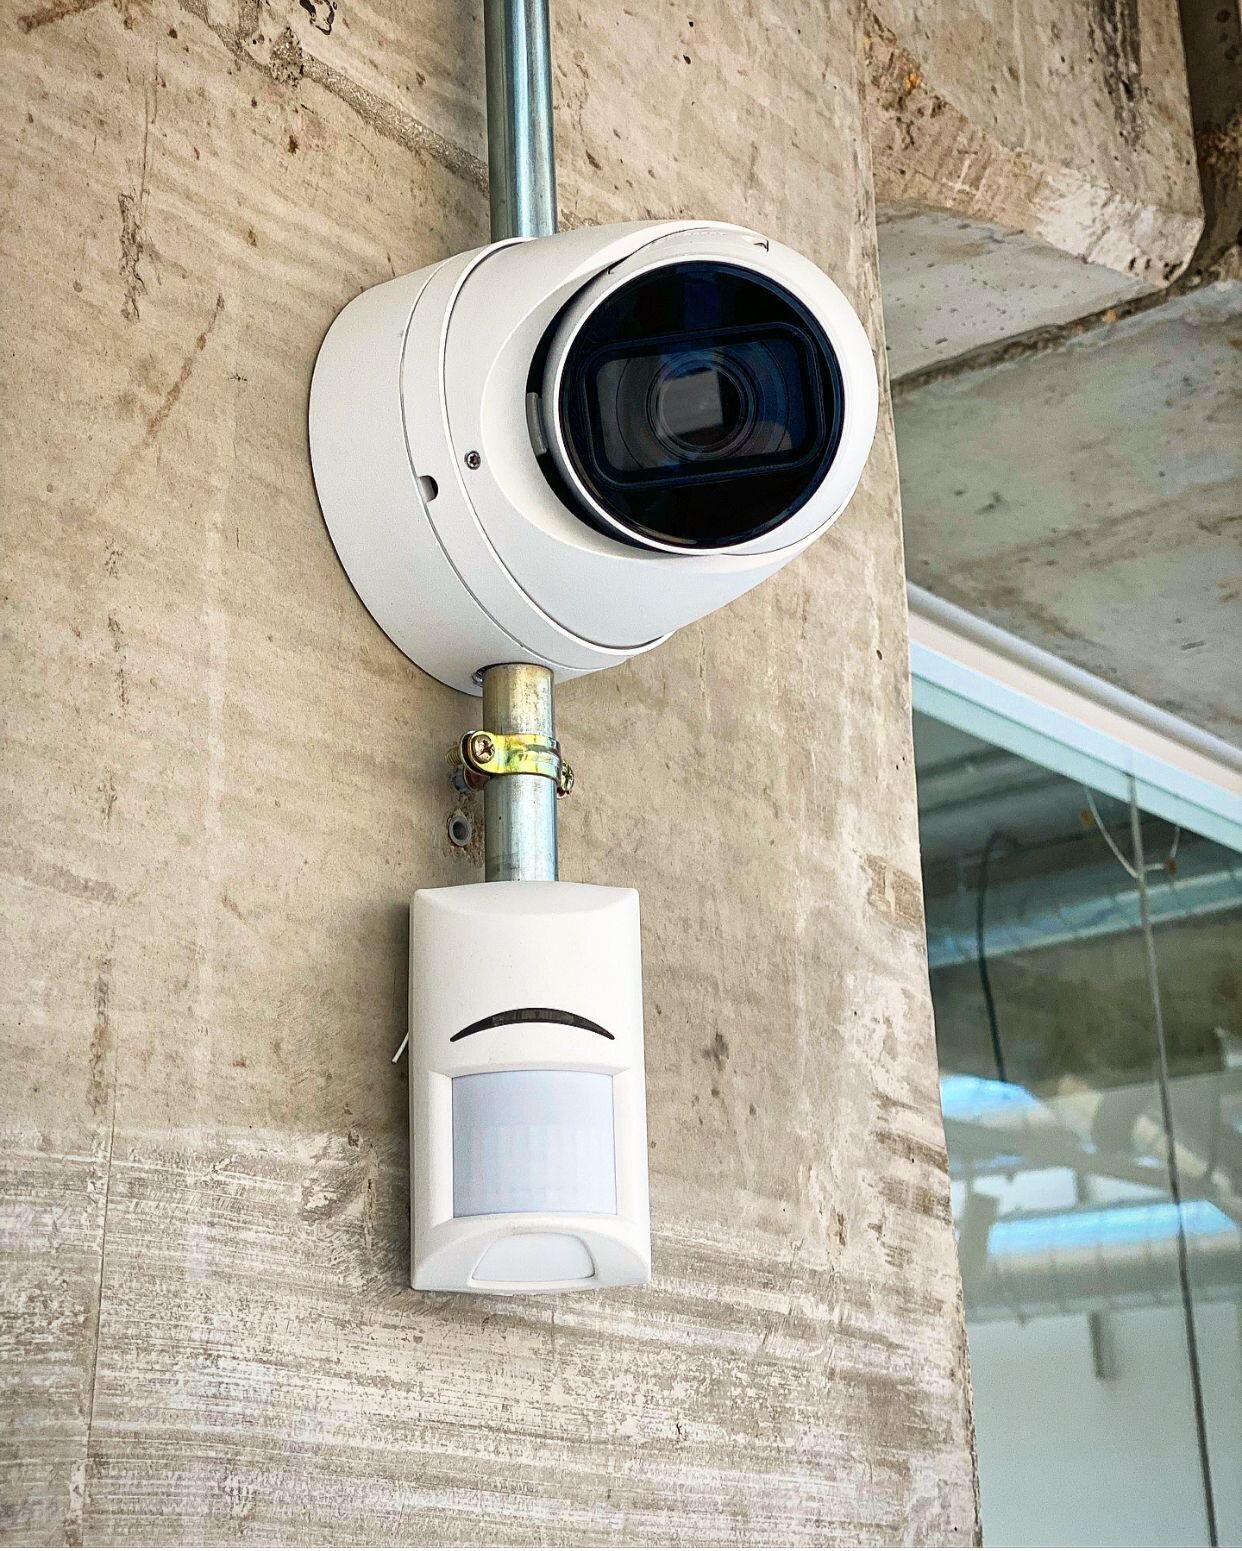 Tecnocat Seguretat sistemas de alarmas ,sistemas de contra incendios y sistemas de video vigilancia Barcelona